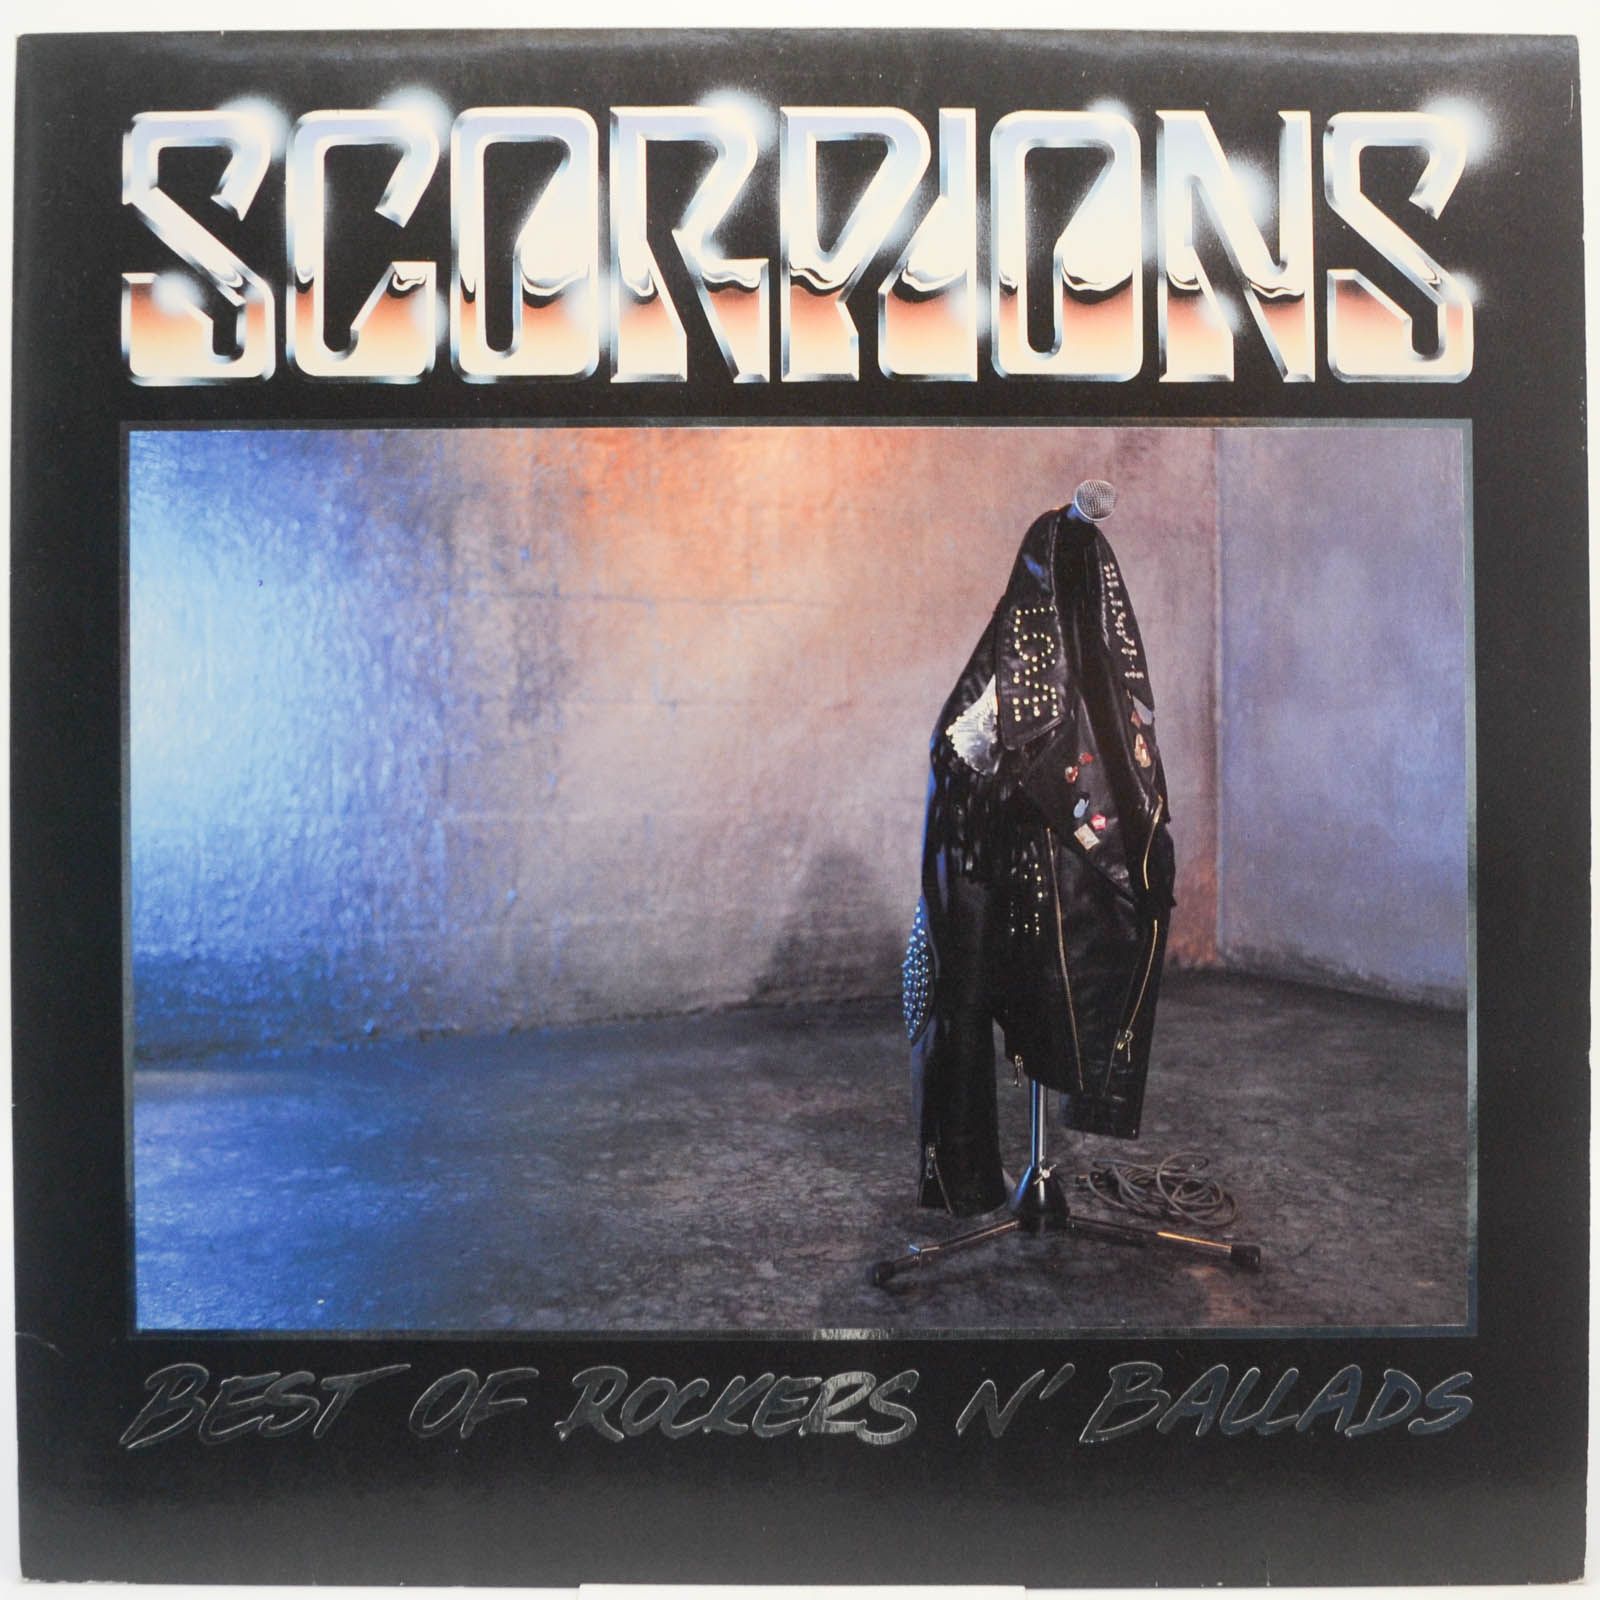 Scorpions — Best Of Rockers 'N' Ballads, 1989